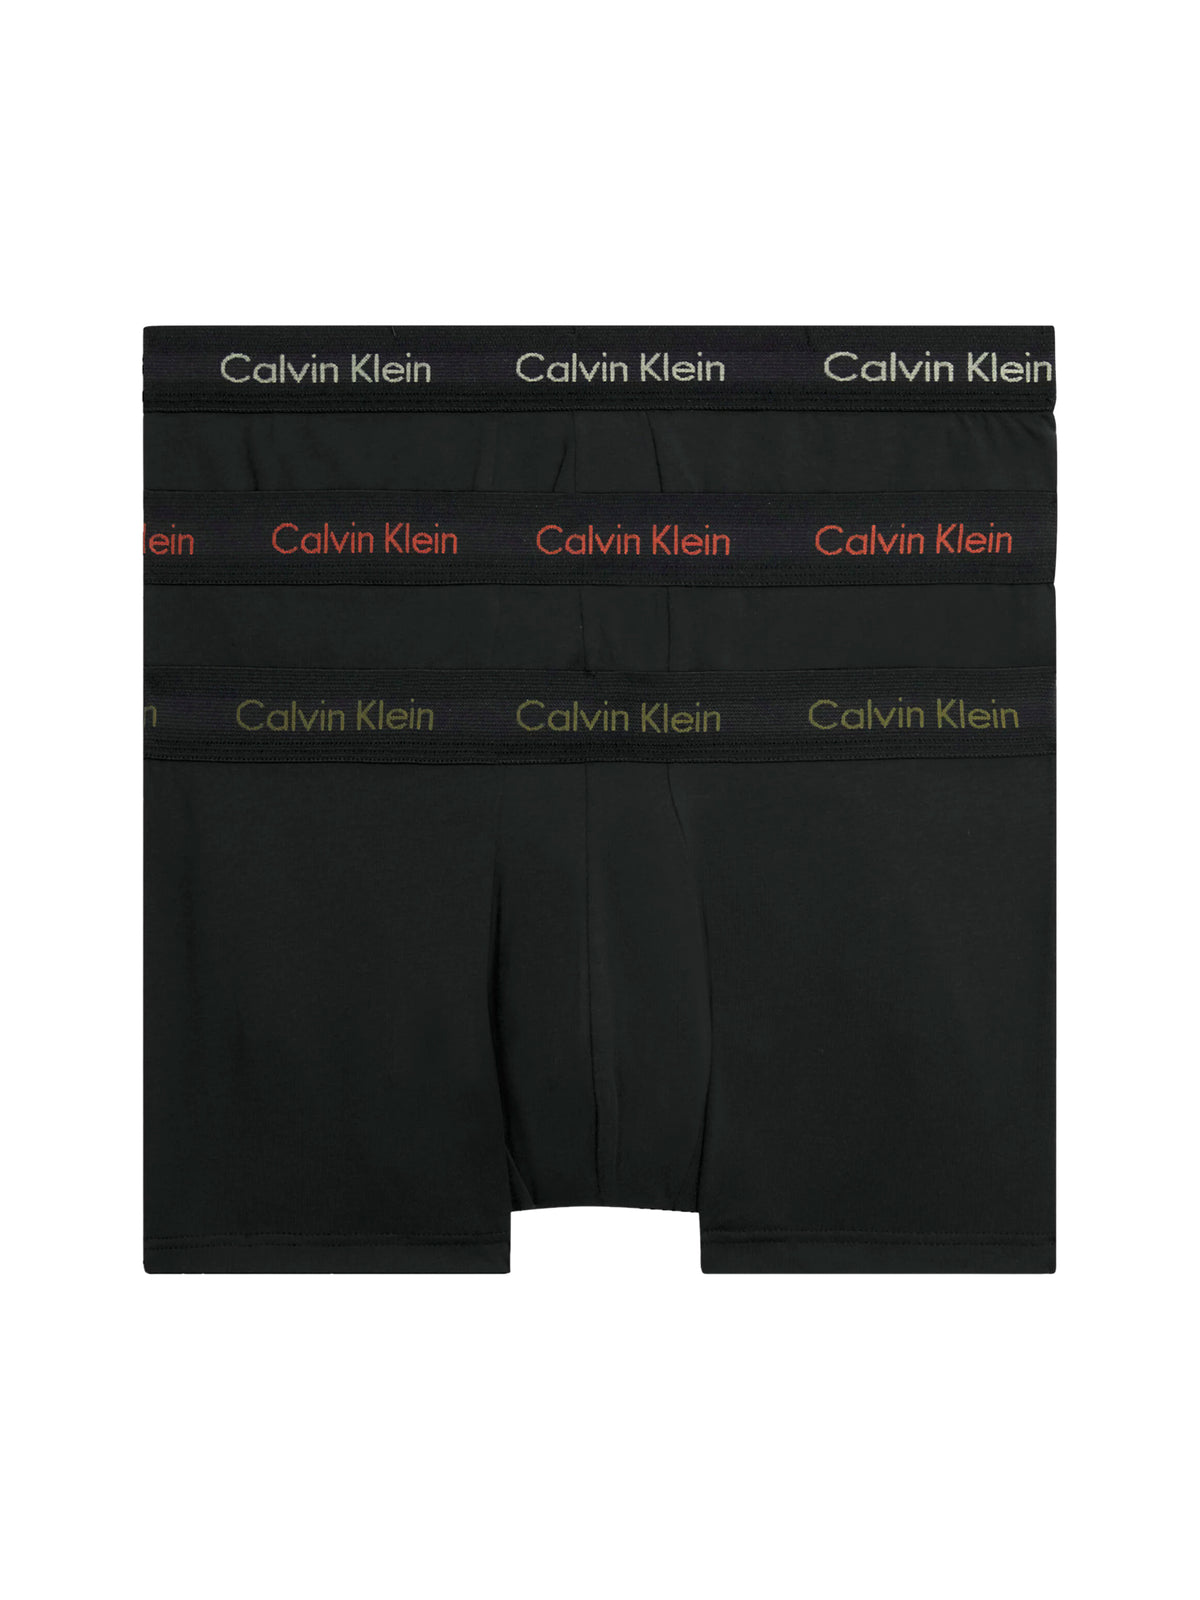 Mens Calvin Klein Boxer Shorts Low Rise Trunks 3 Pack, 01, U2664G, B- Eclyps, Mcca Orange, OLV Brnch LG